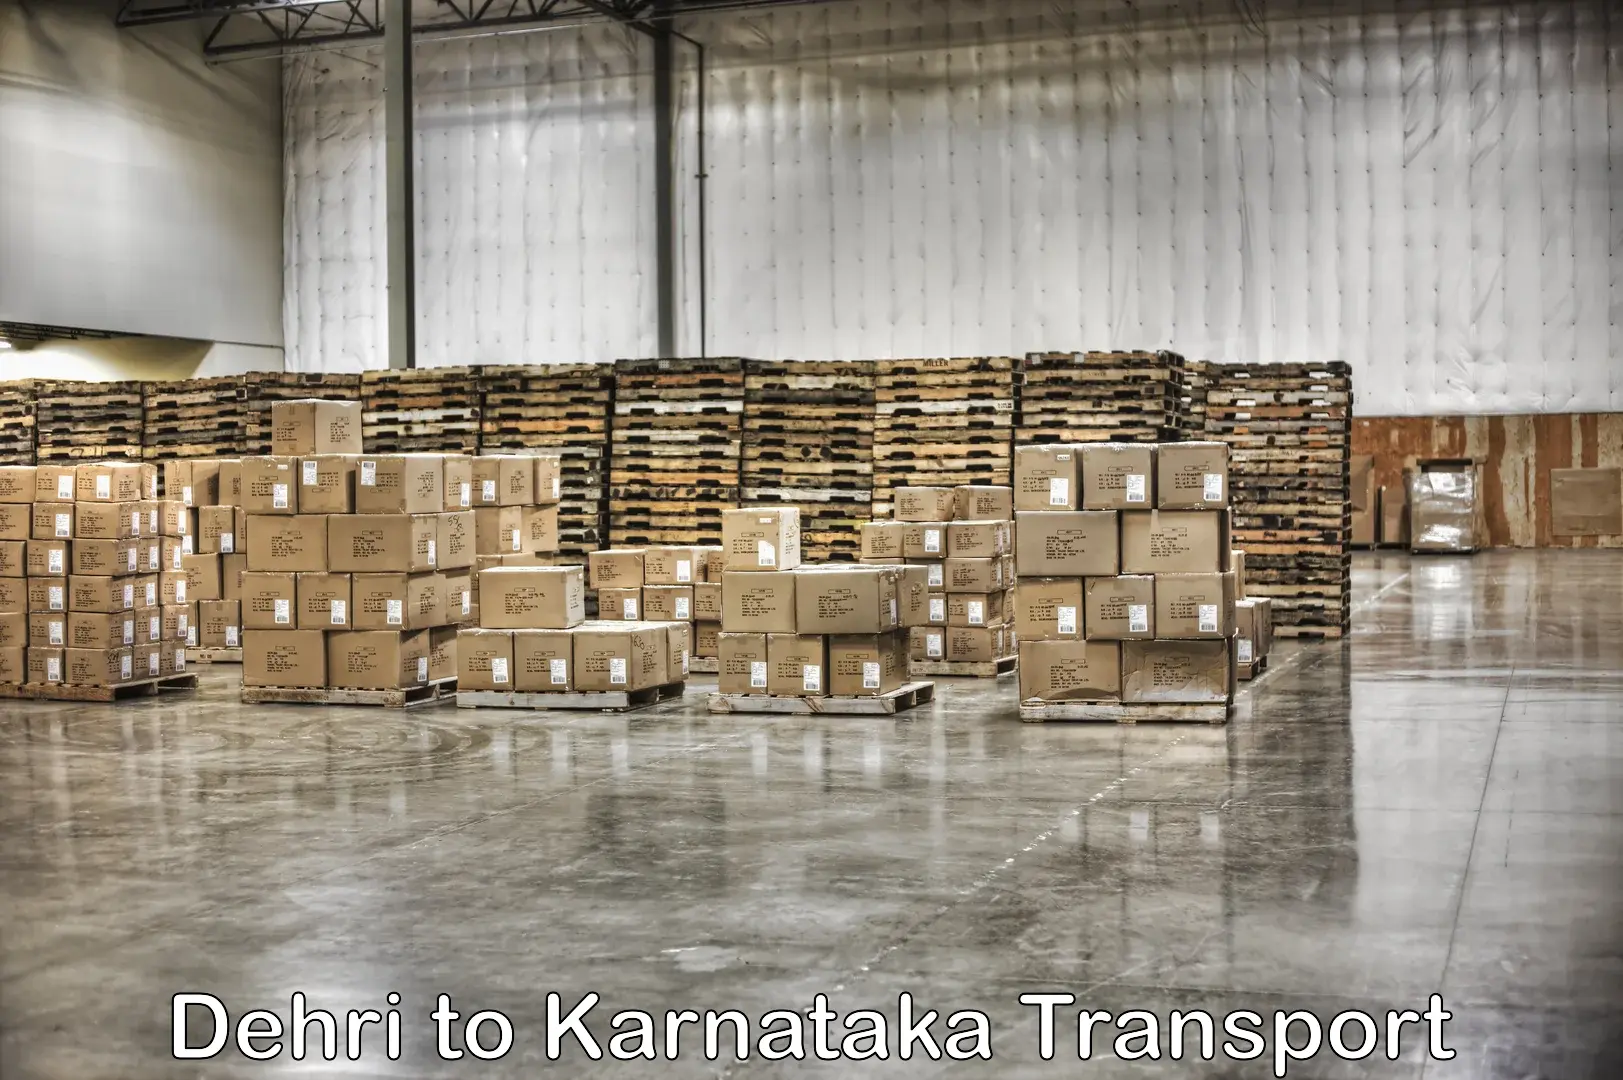 Truck transport companies in India Dehri to Deodurga